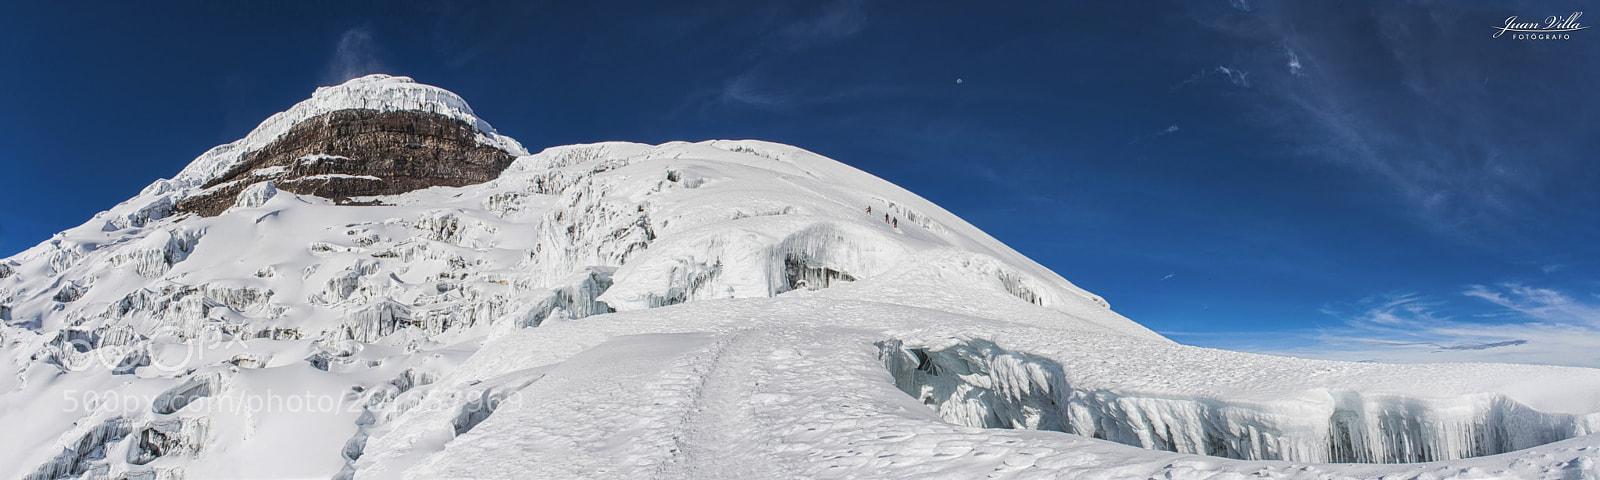 Nikon D7100 sample photo. Glaciar del cotopaxi photography